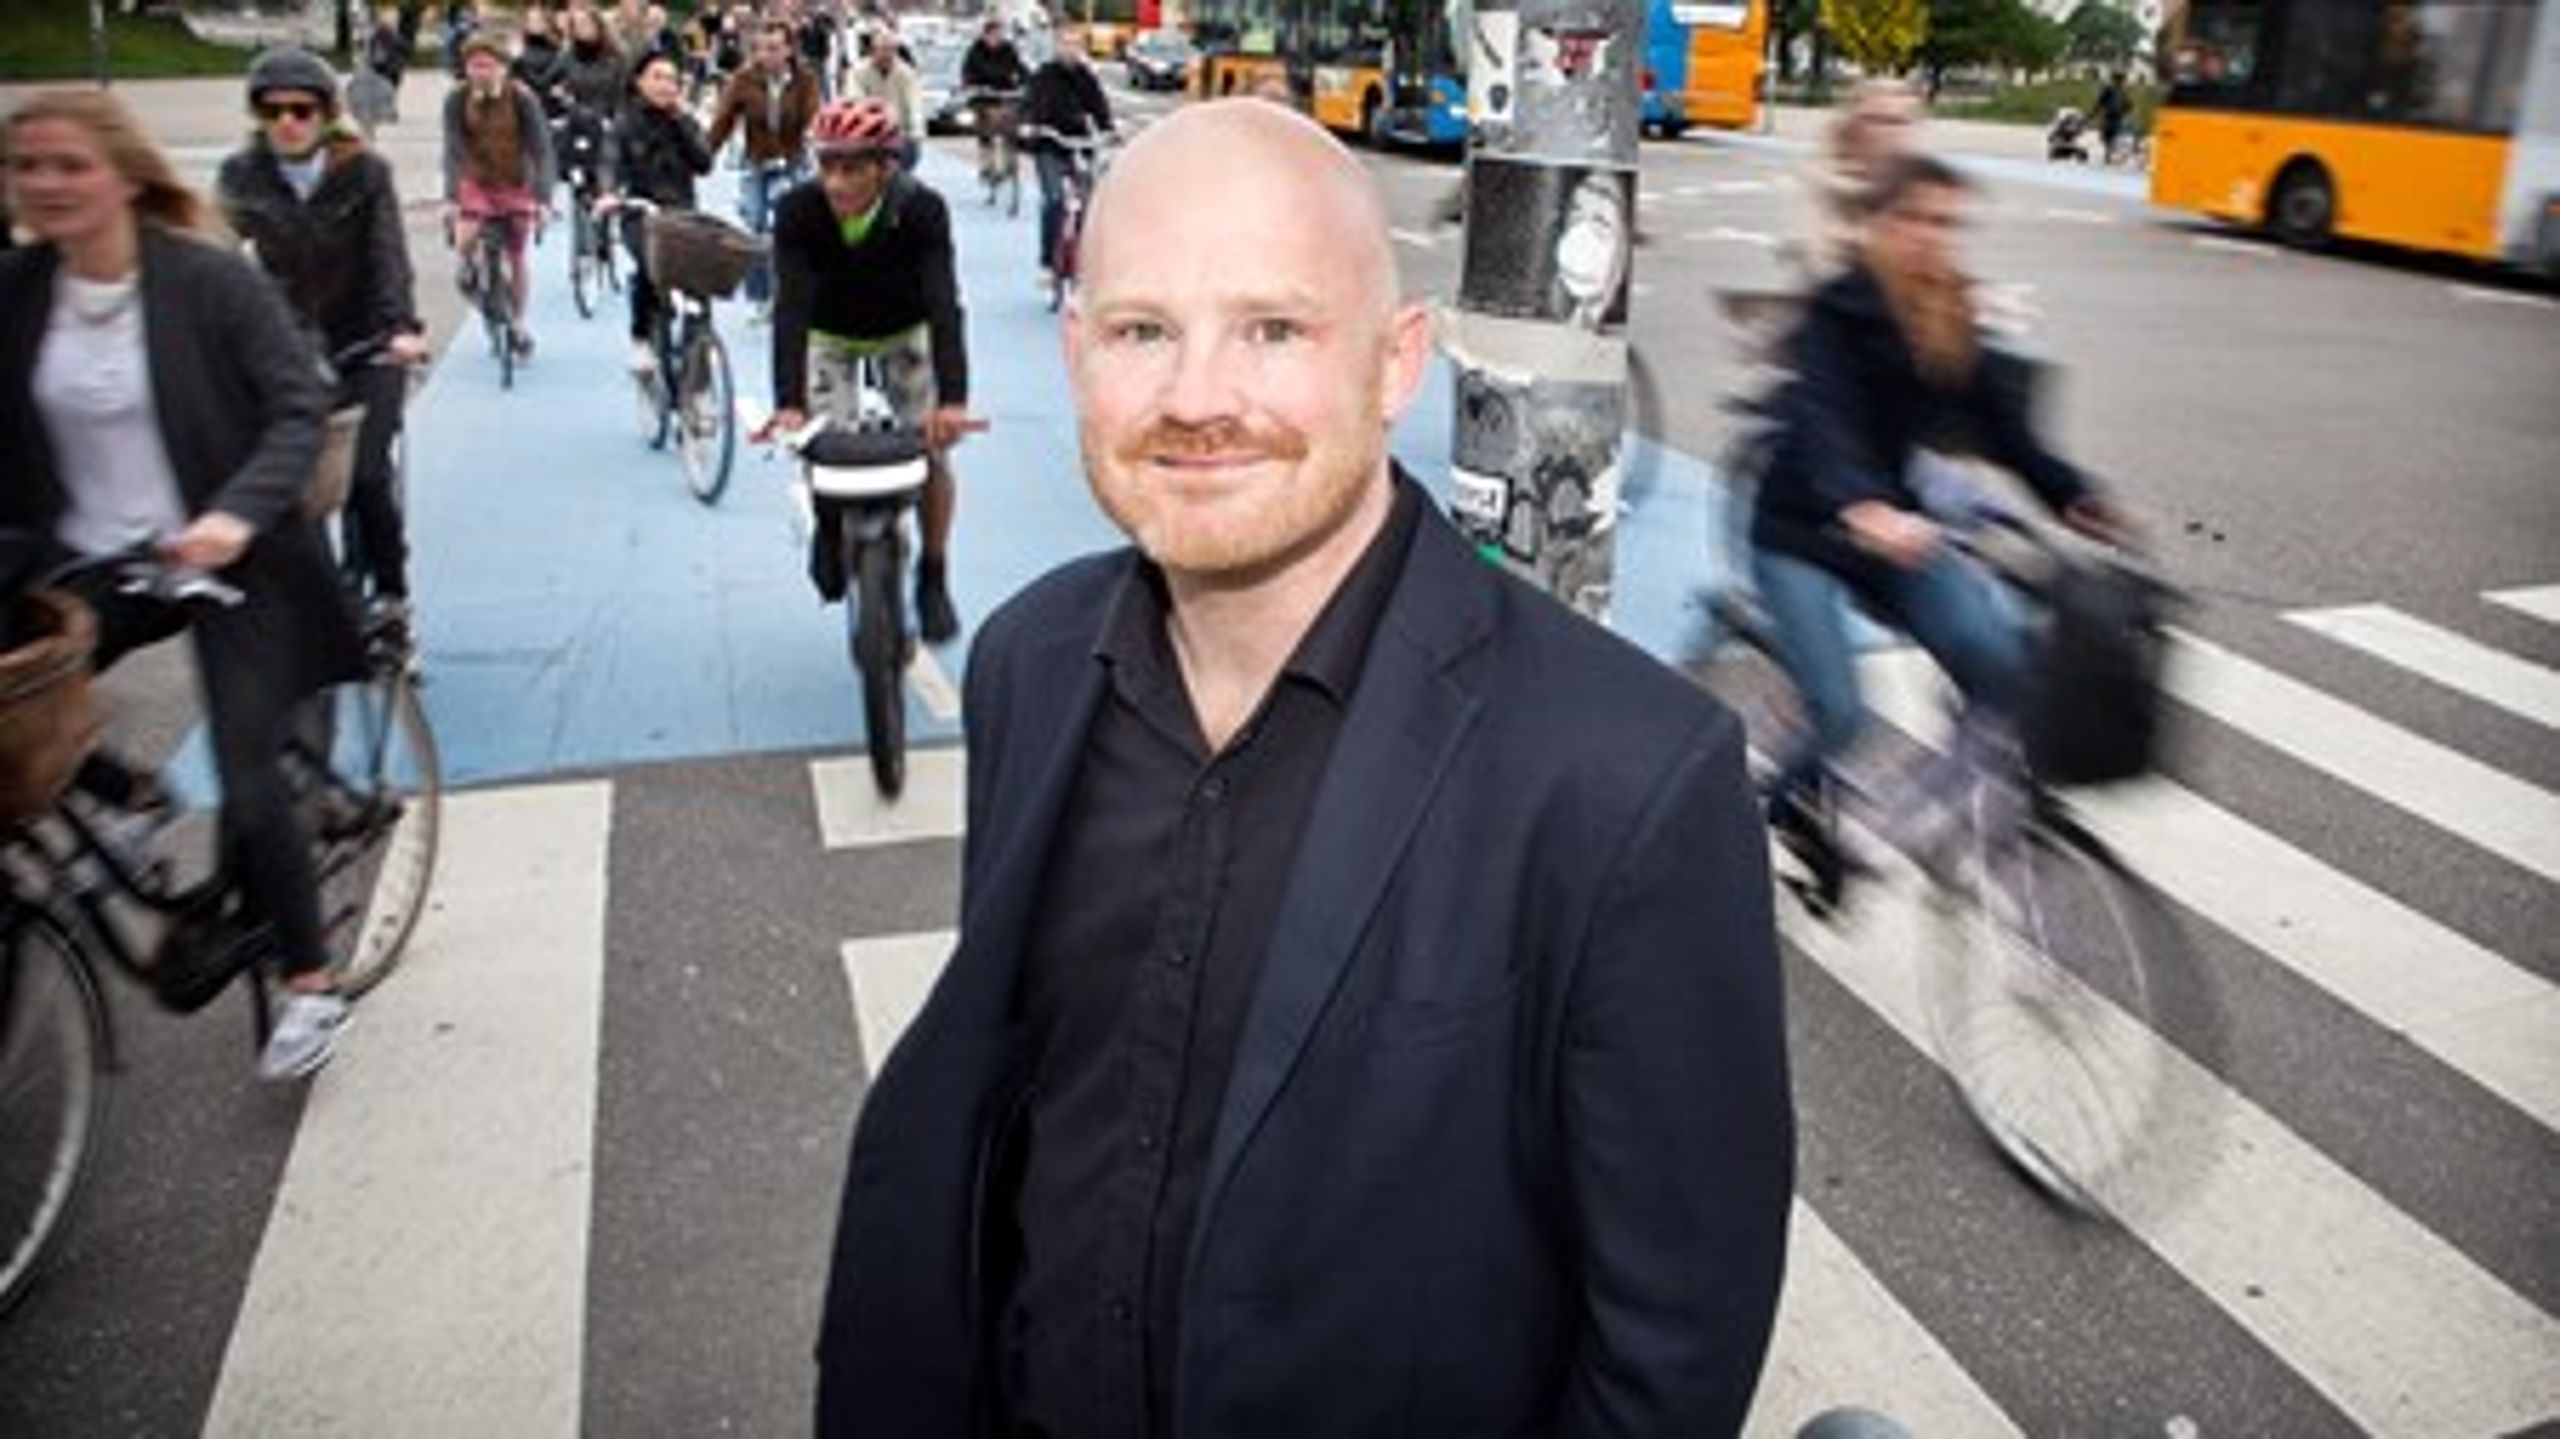 Roadpricing og investeringer i cykler og kollektiv trafik er vejen frem, hvis vi vil mindske trængslen, skriver Morten Kabell (EL).&nbsp;